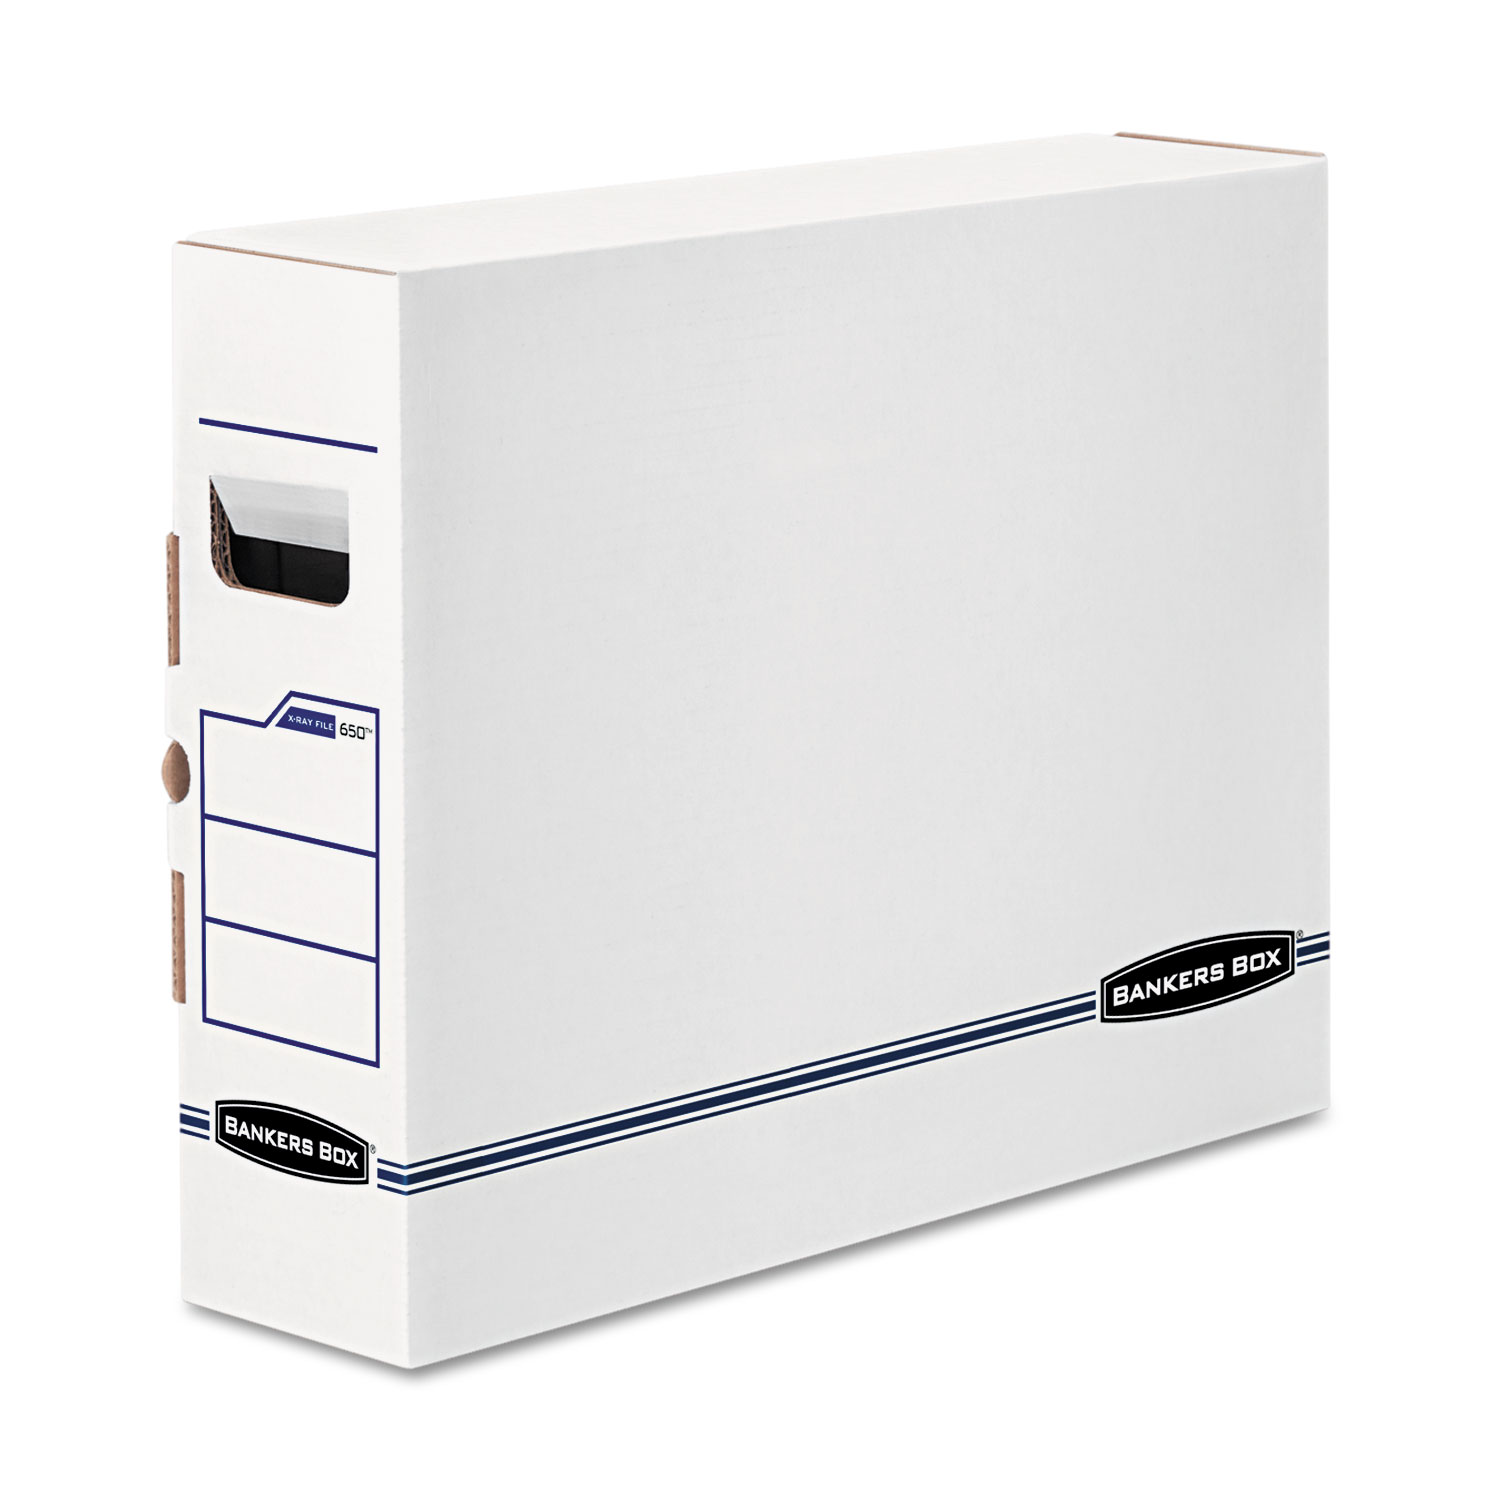  Bankers Box 00650 X-Ray Storage Boxes, 5 x 18.75 x 14.88, White/Blue, 6/Carton (FEL00650) 